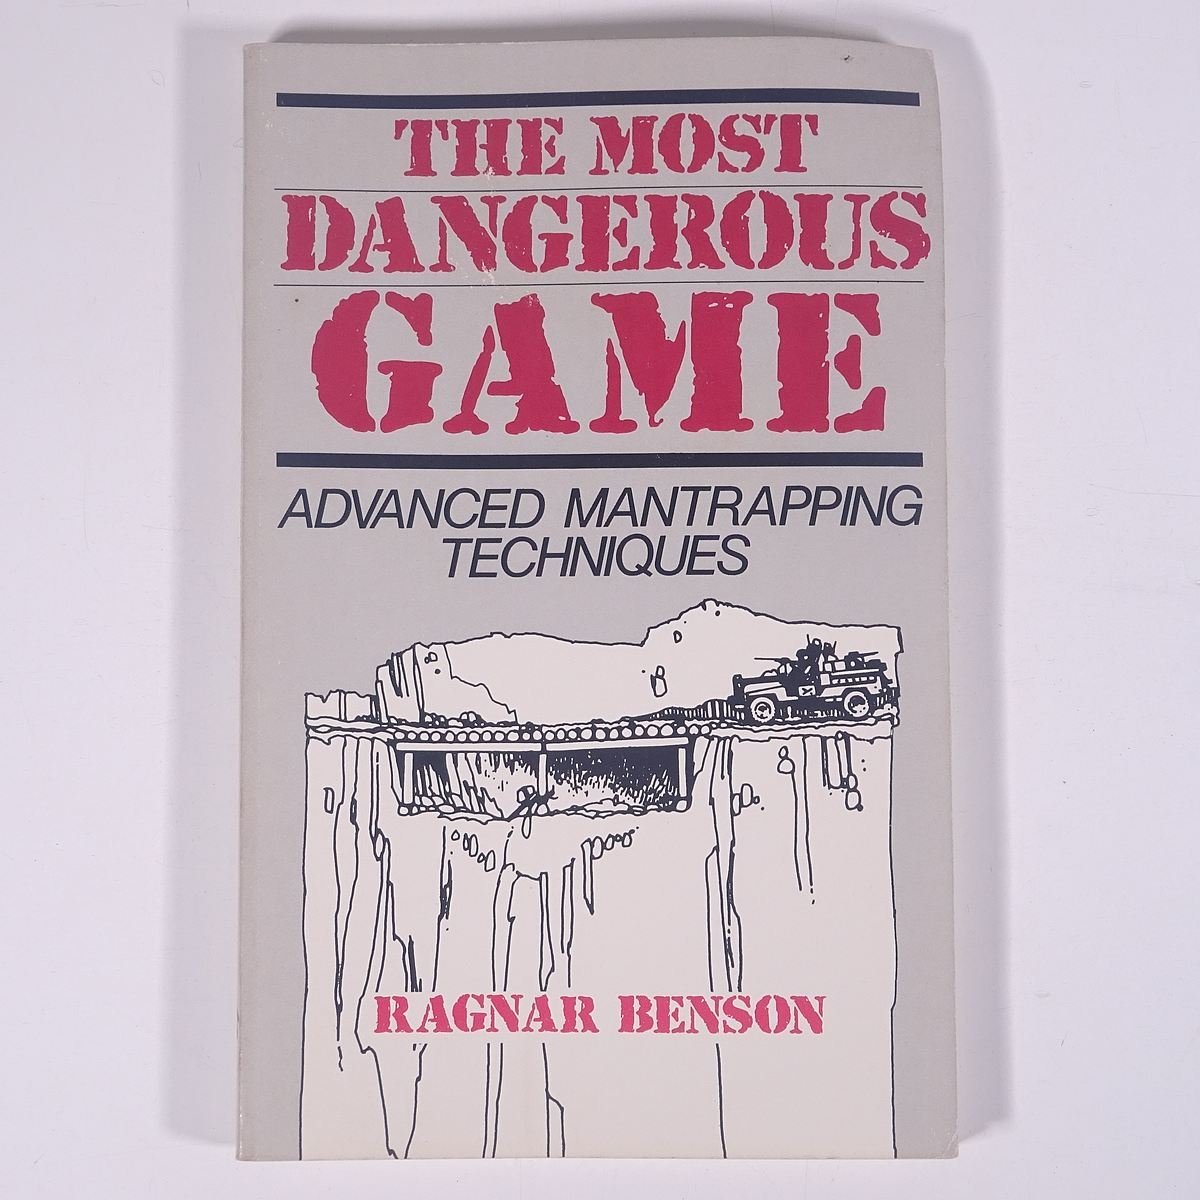 【英語洋書】 THE MOST DANGEROUS GAME 最も危険なゲーム 1986 単行本 軍隊 軍人 ミリタリー 罠 トラップ